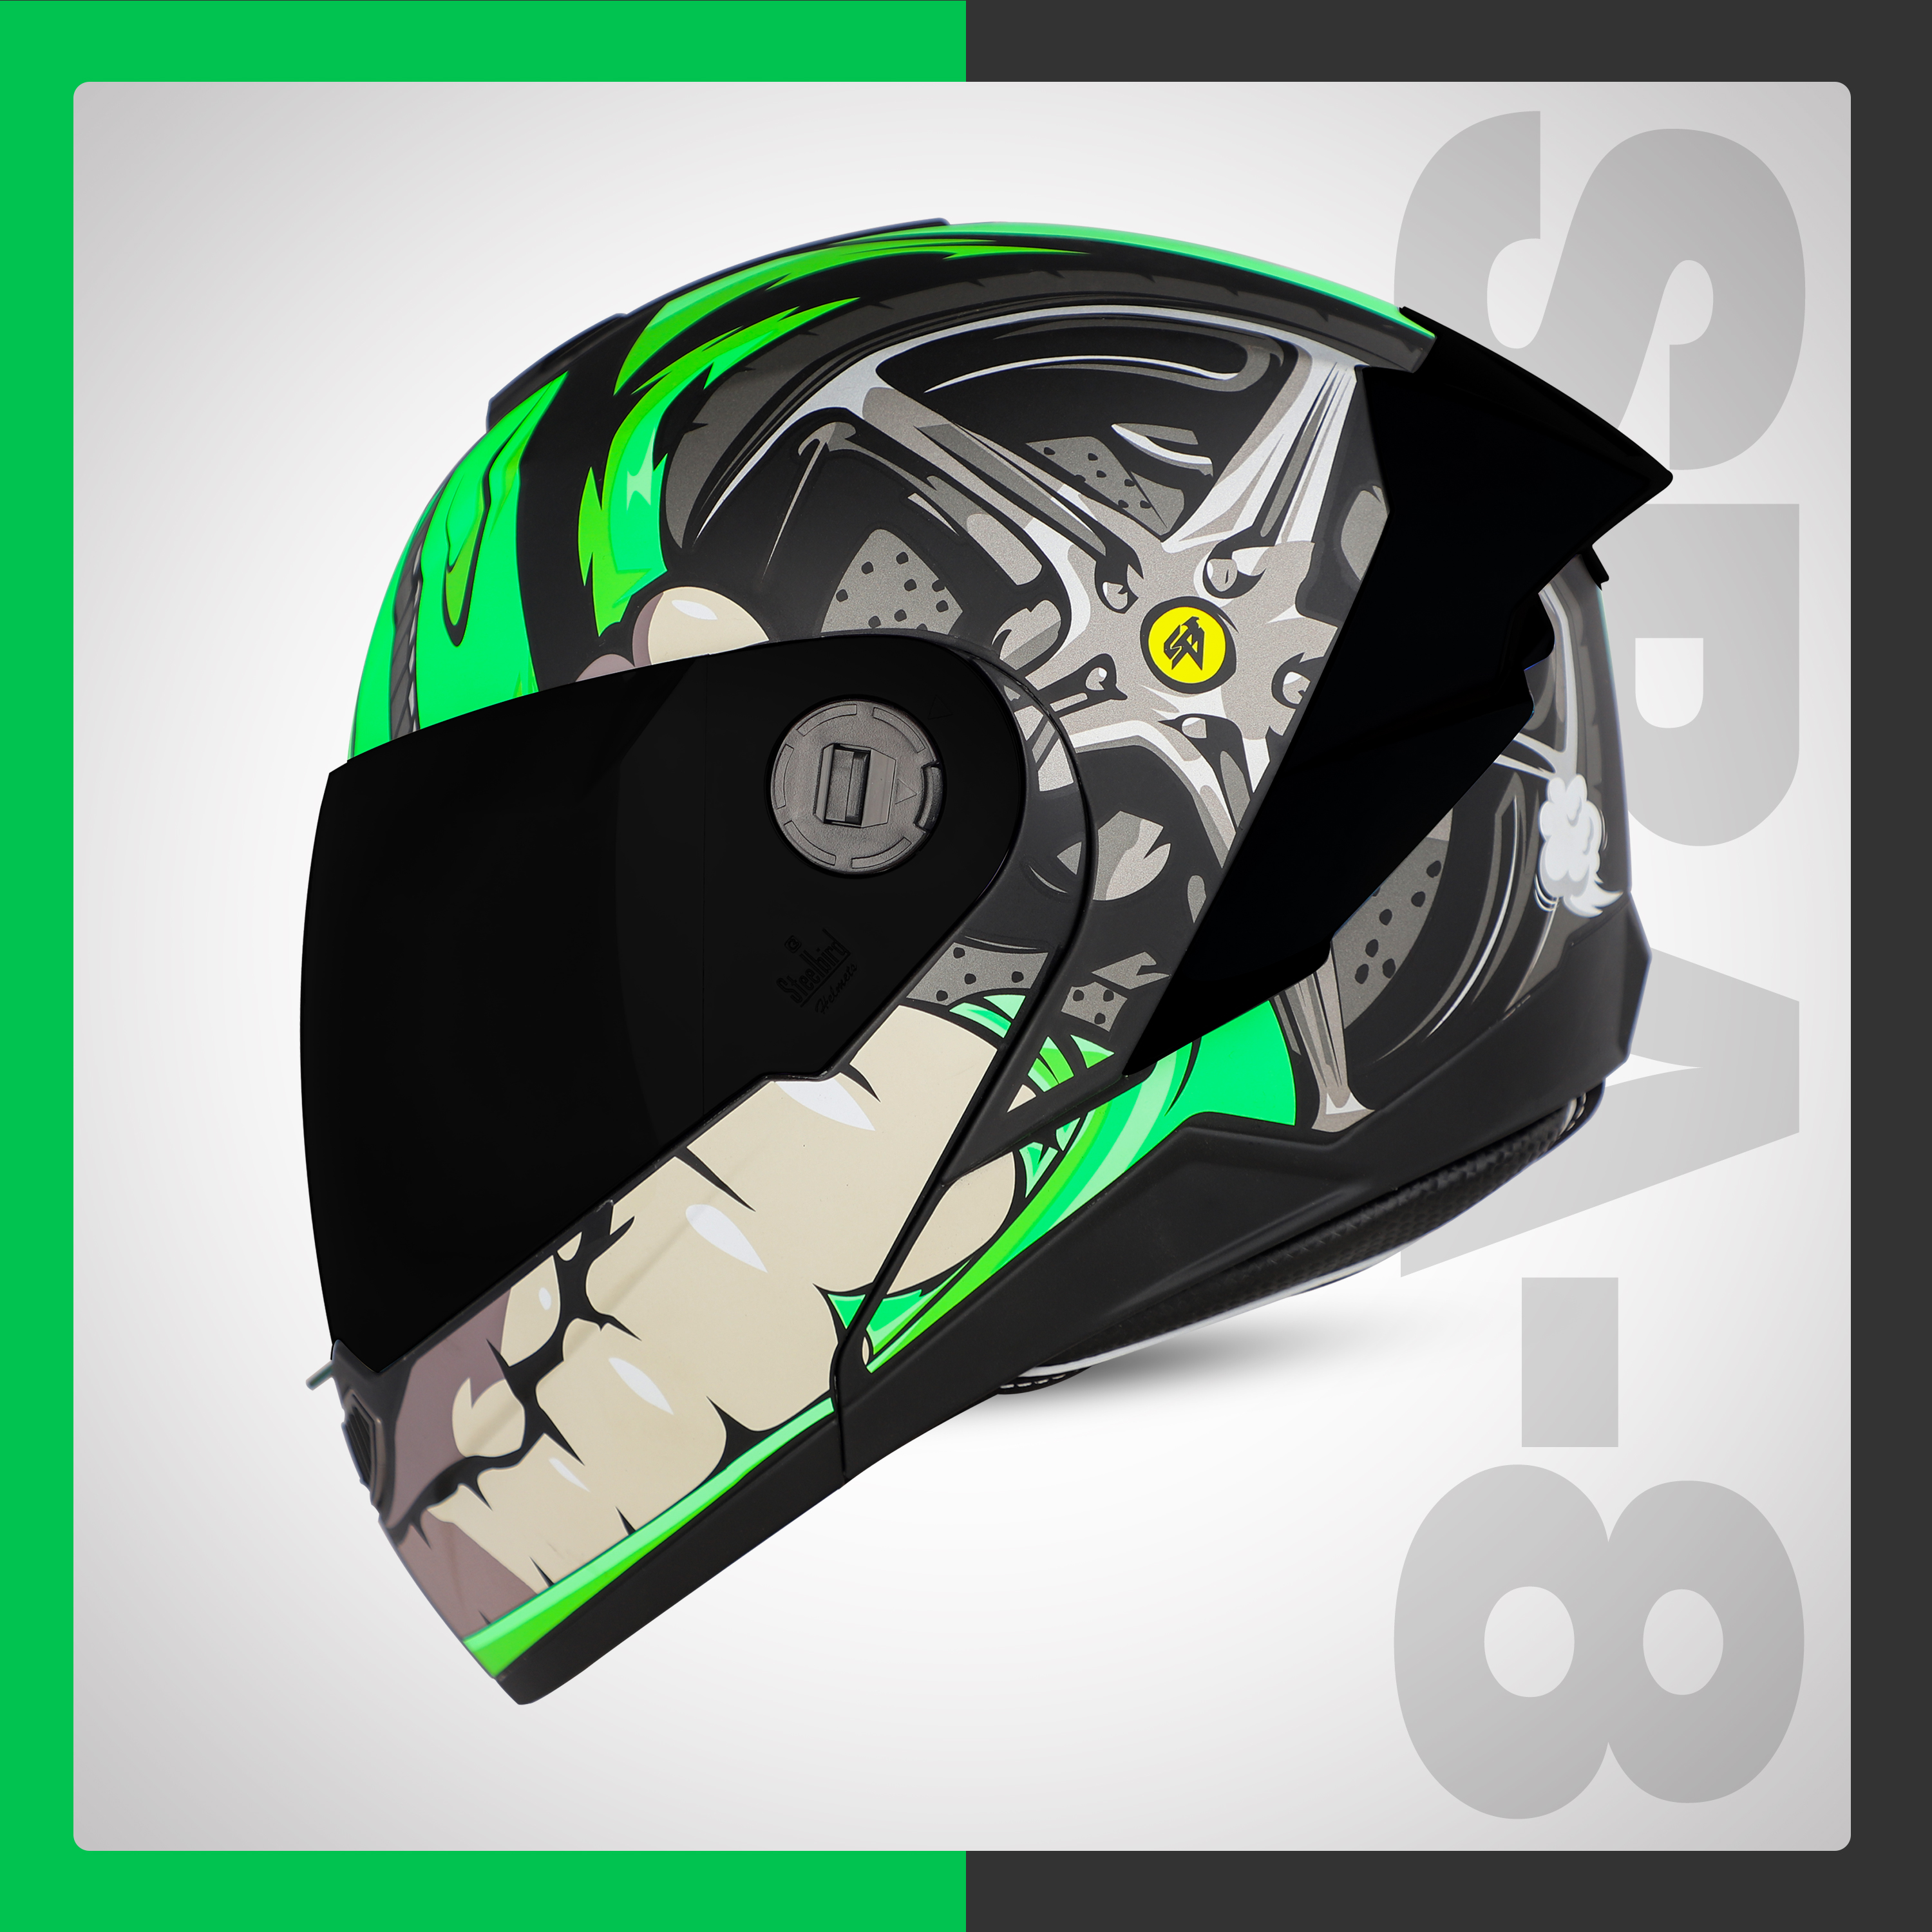 Steelbird SBA-8 Crazy Wheel ISI Certified Flip-Up Helmet For Men And Women (Matt Black Green With Smoke Visor)